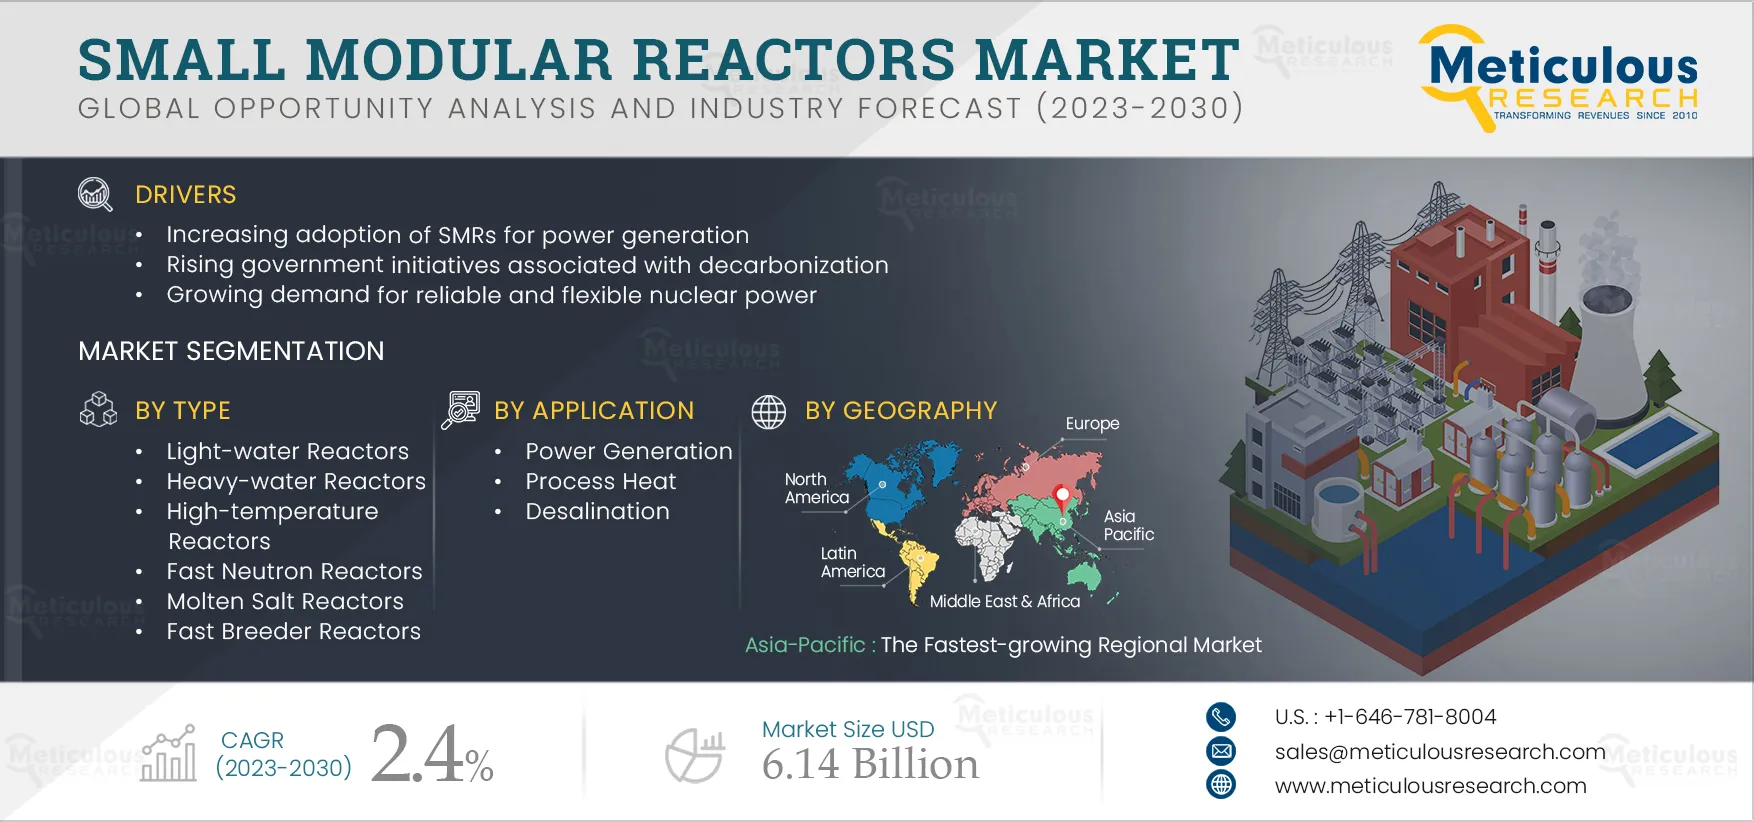 Small Modular Reactors Market